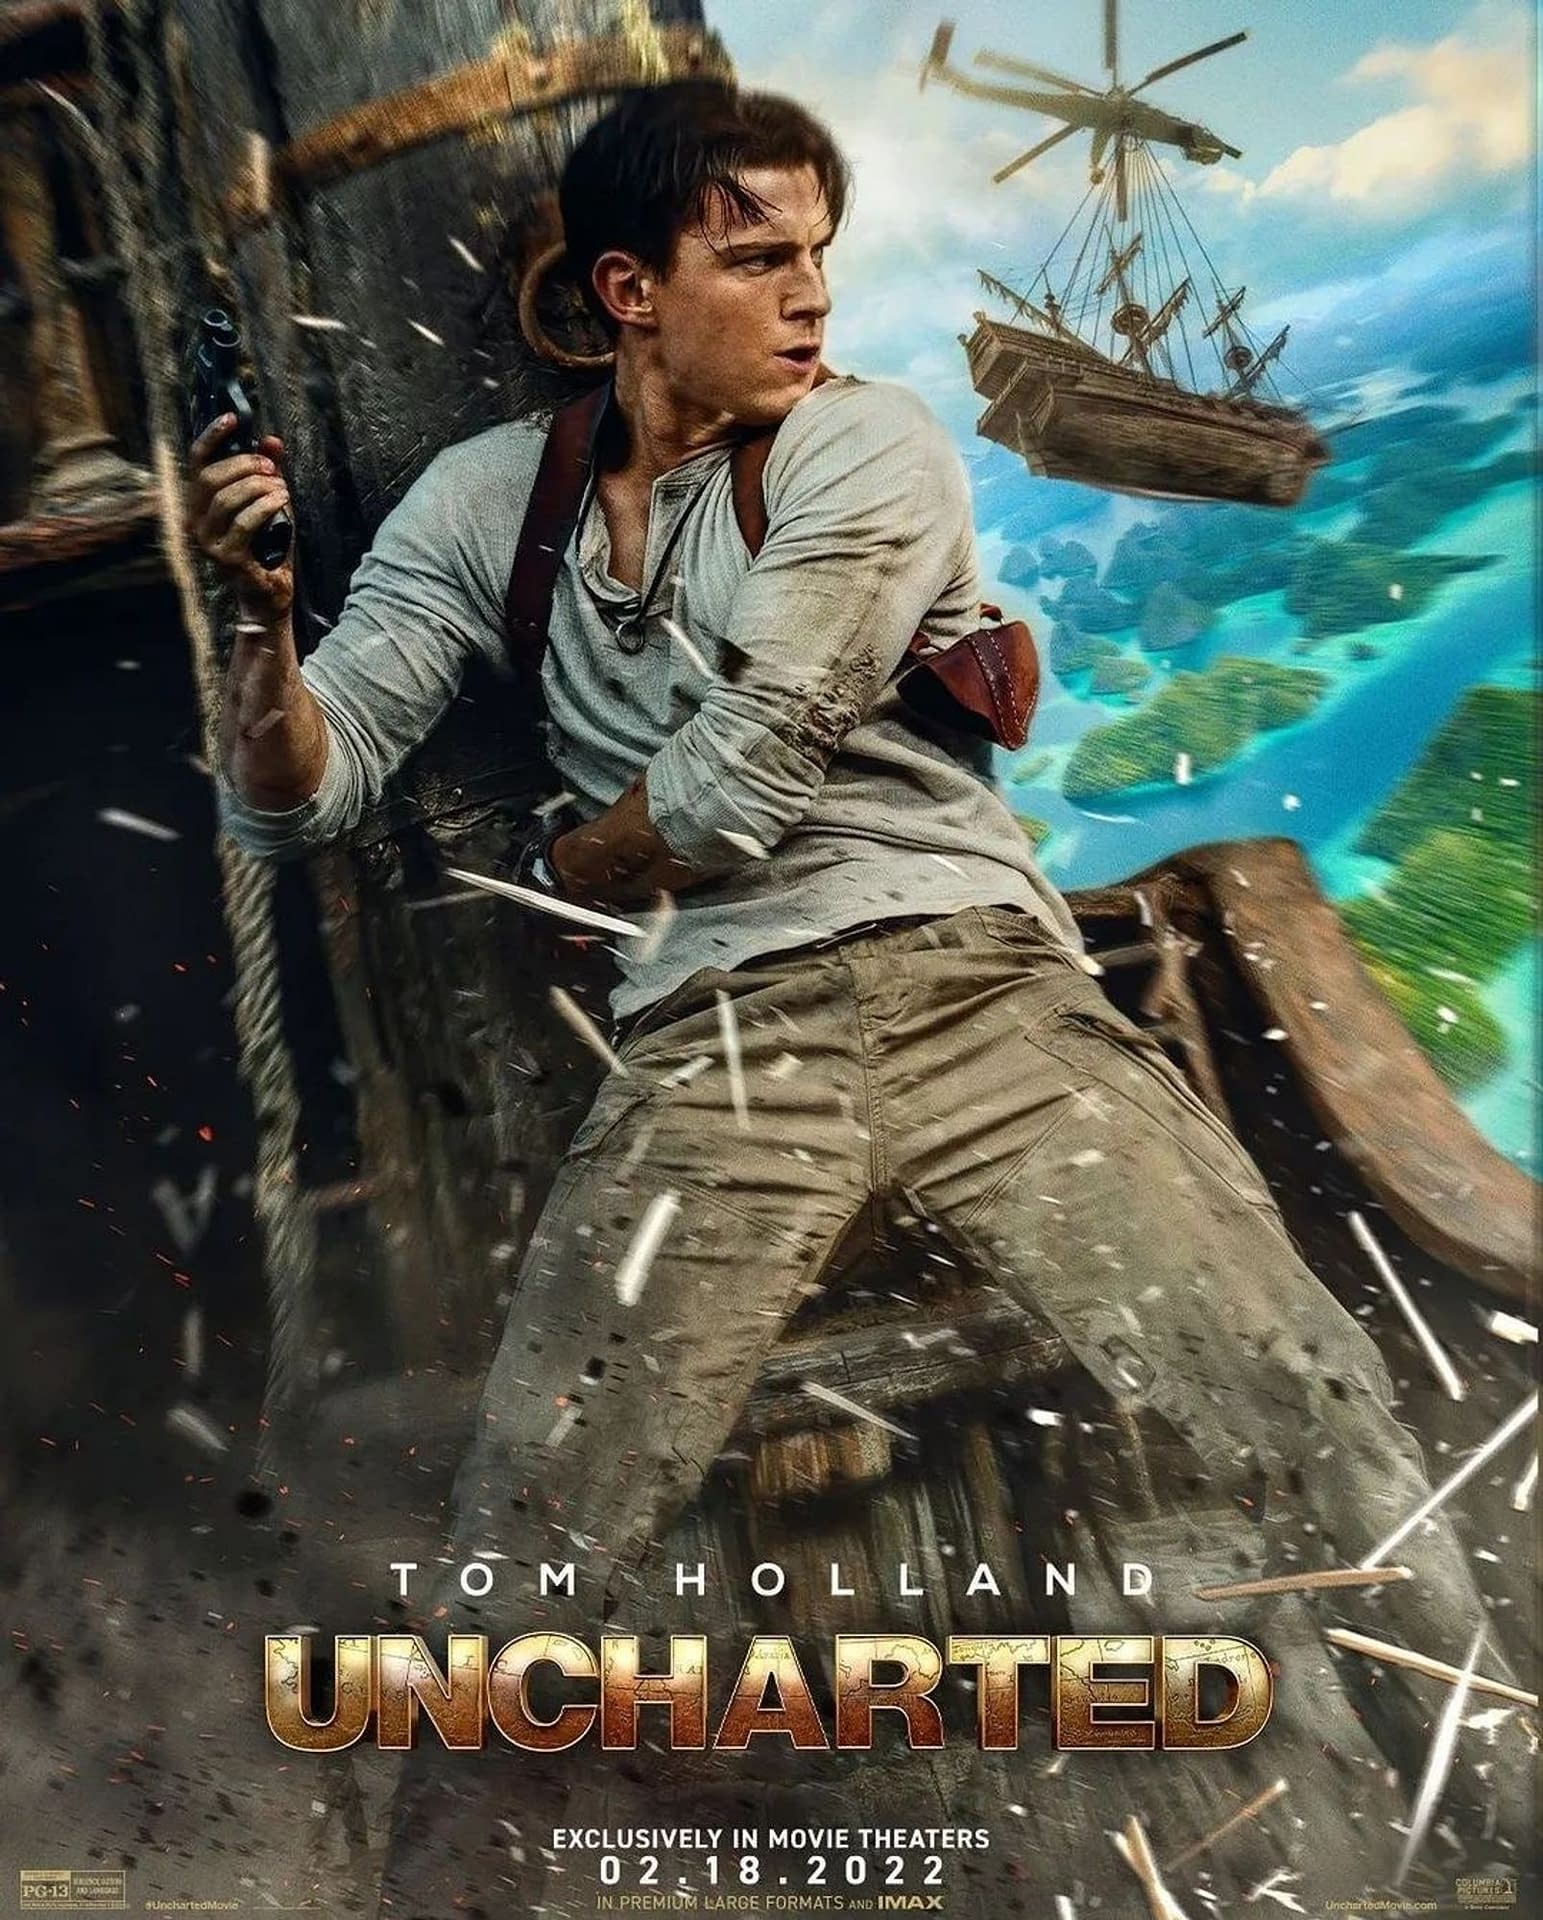 Uncharted - Official Trailer #2 (2022) Tom Holland, Mark Wahlberg, Antonio  Banderas 